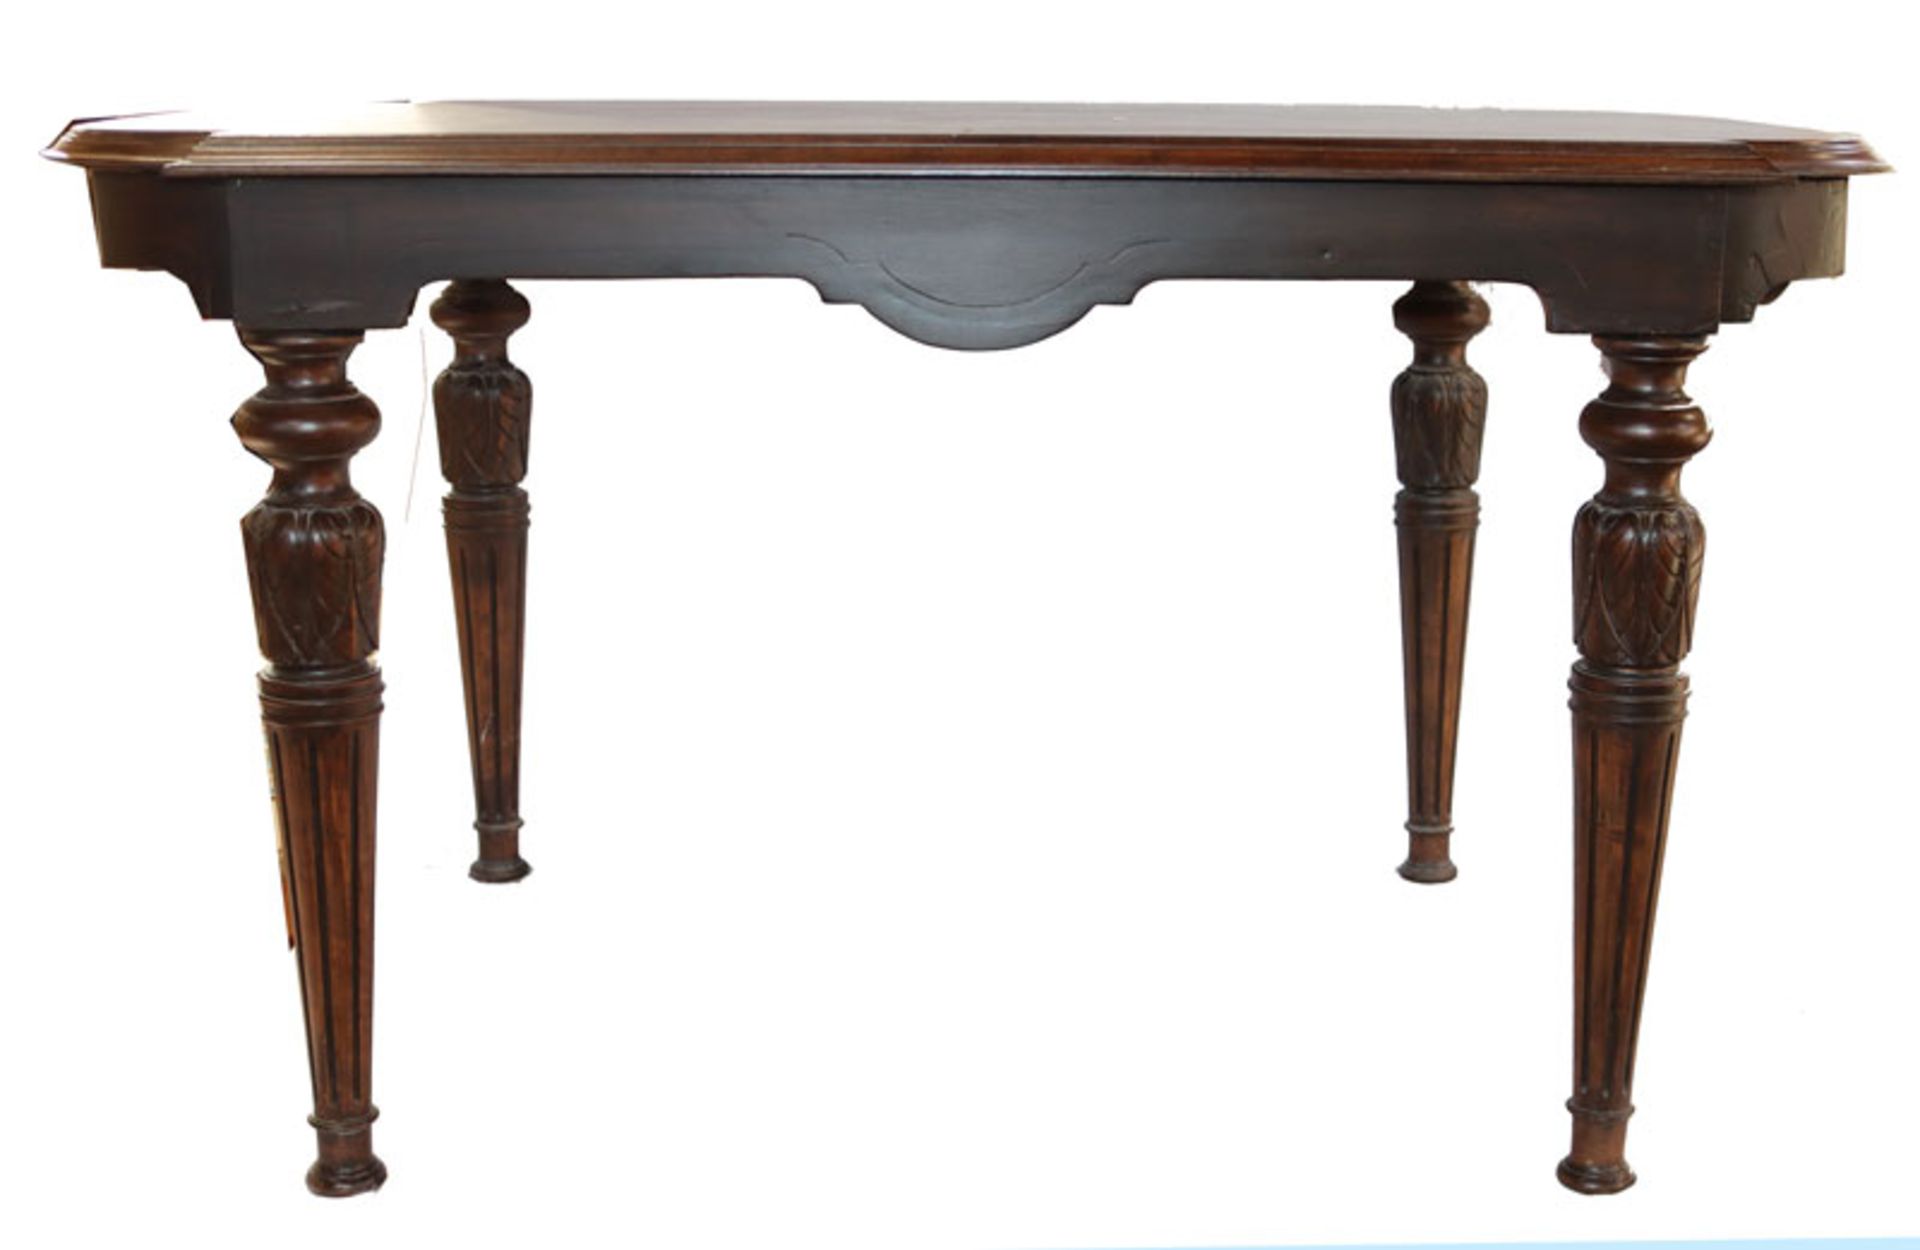 Tisch in oval/eckiger Form, dunkel gebeizt, H 68 cm, L 118 cm, B 73 cm, Gebrauchsspuren